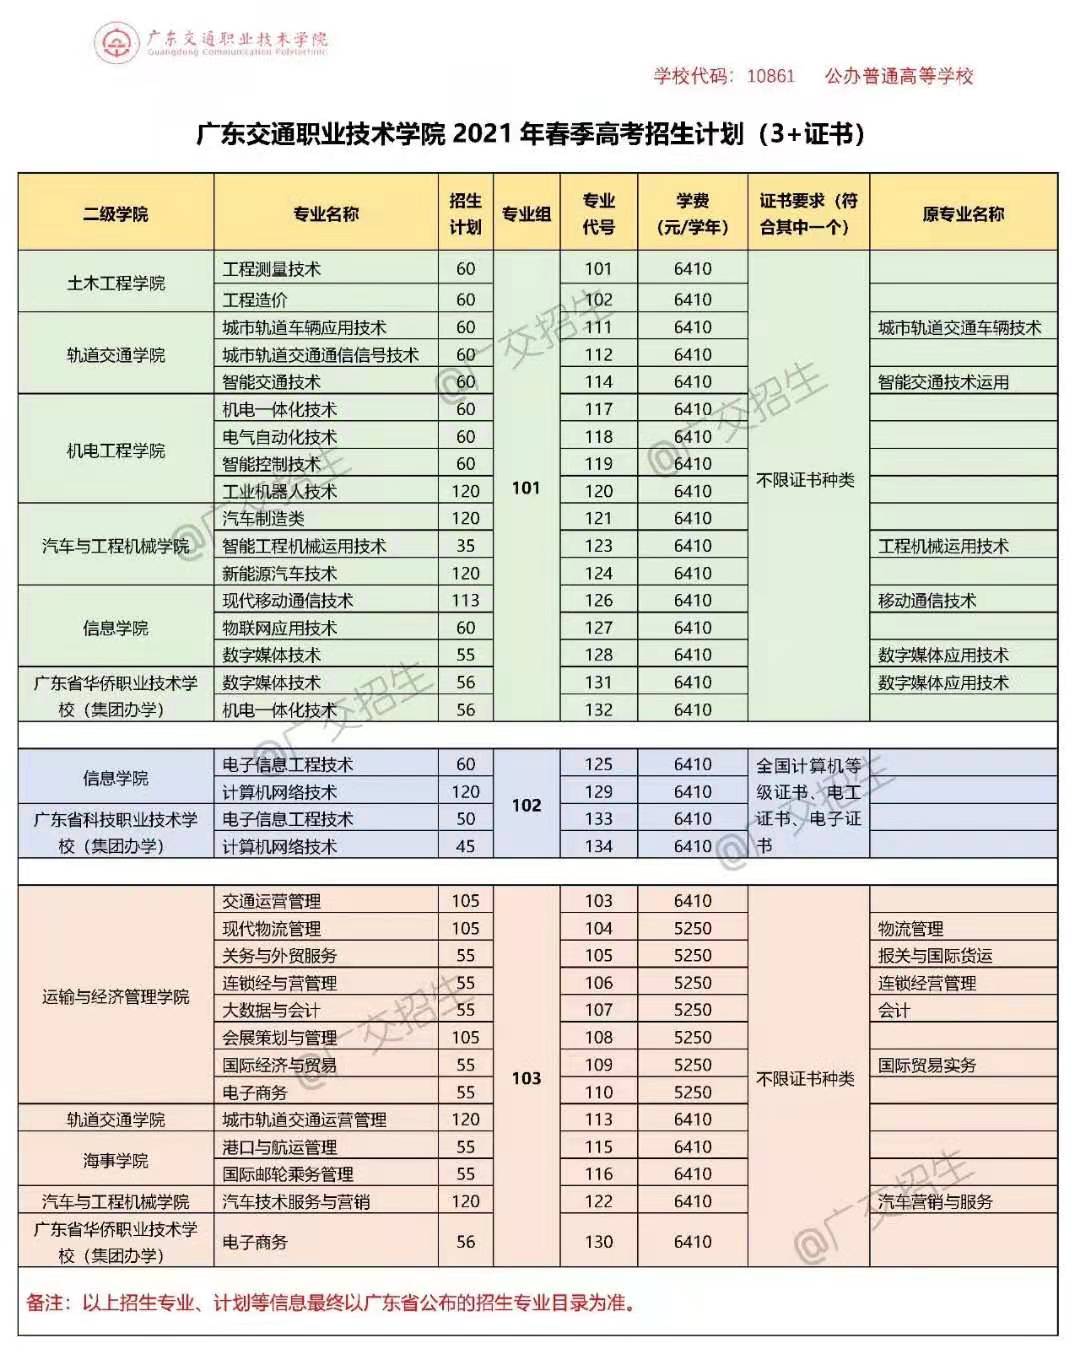 2021年广东交通职业技术学院春季招生专业有哪些？（依学考、3+证书、自主招生等）